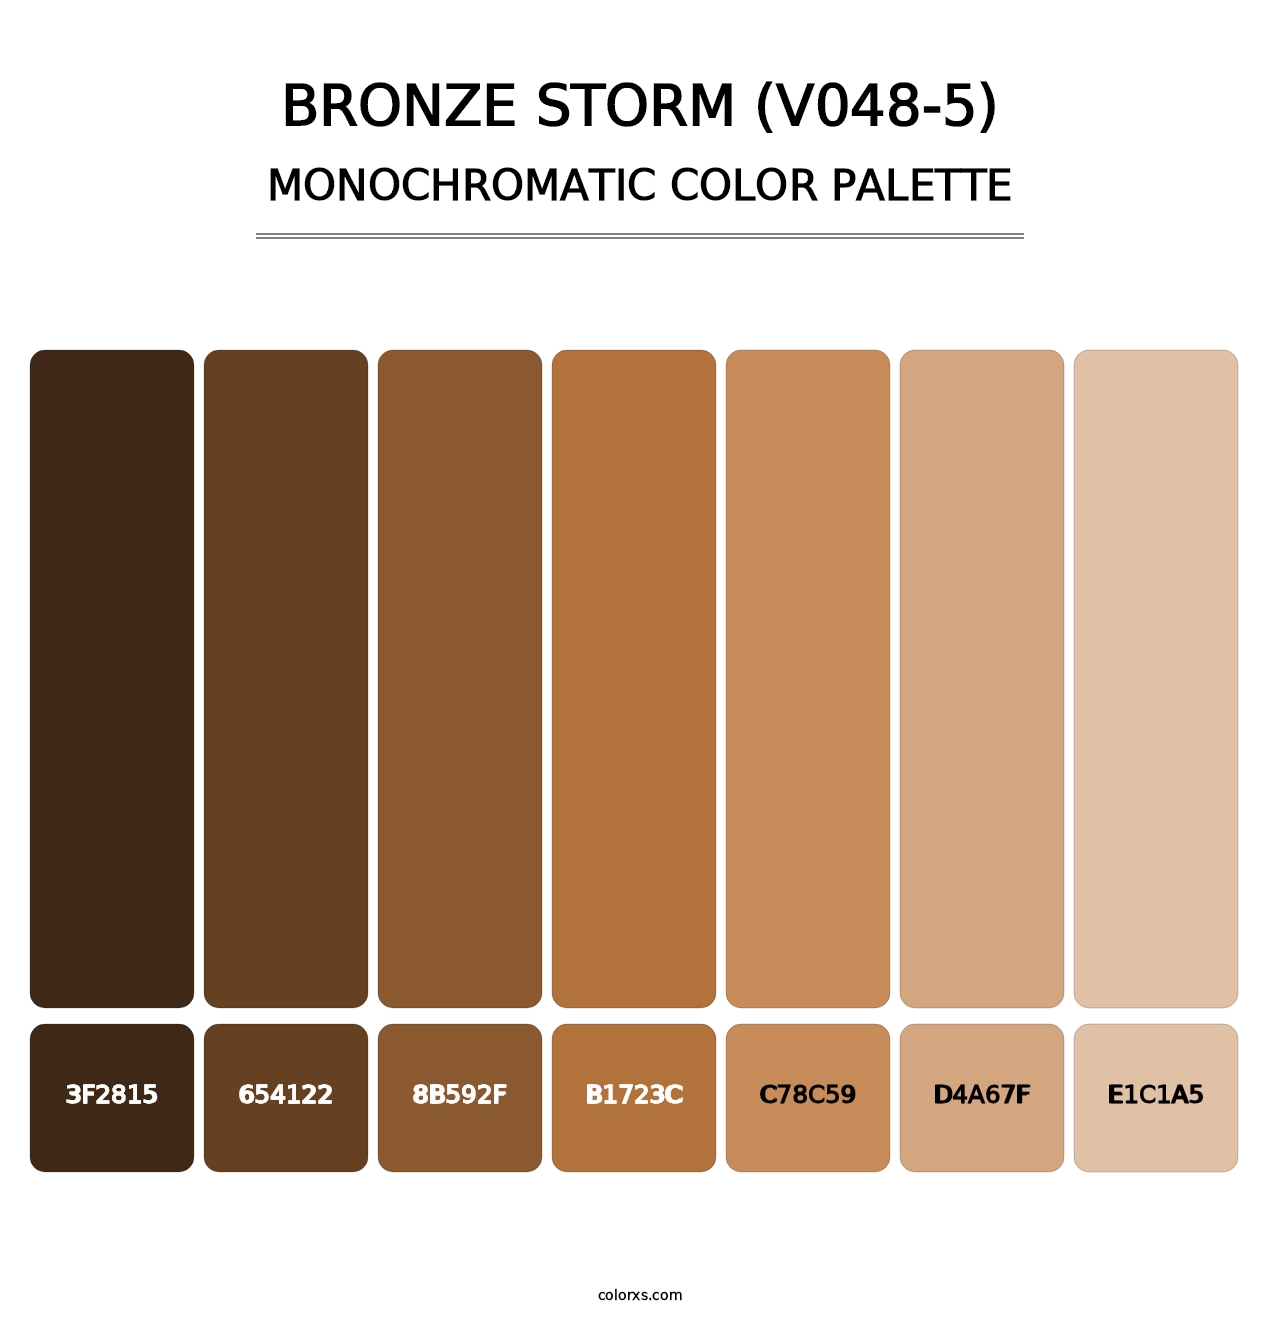 Bronze Storm (V048-5) - Monochromatic Color Palette